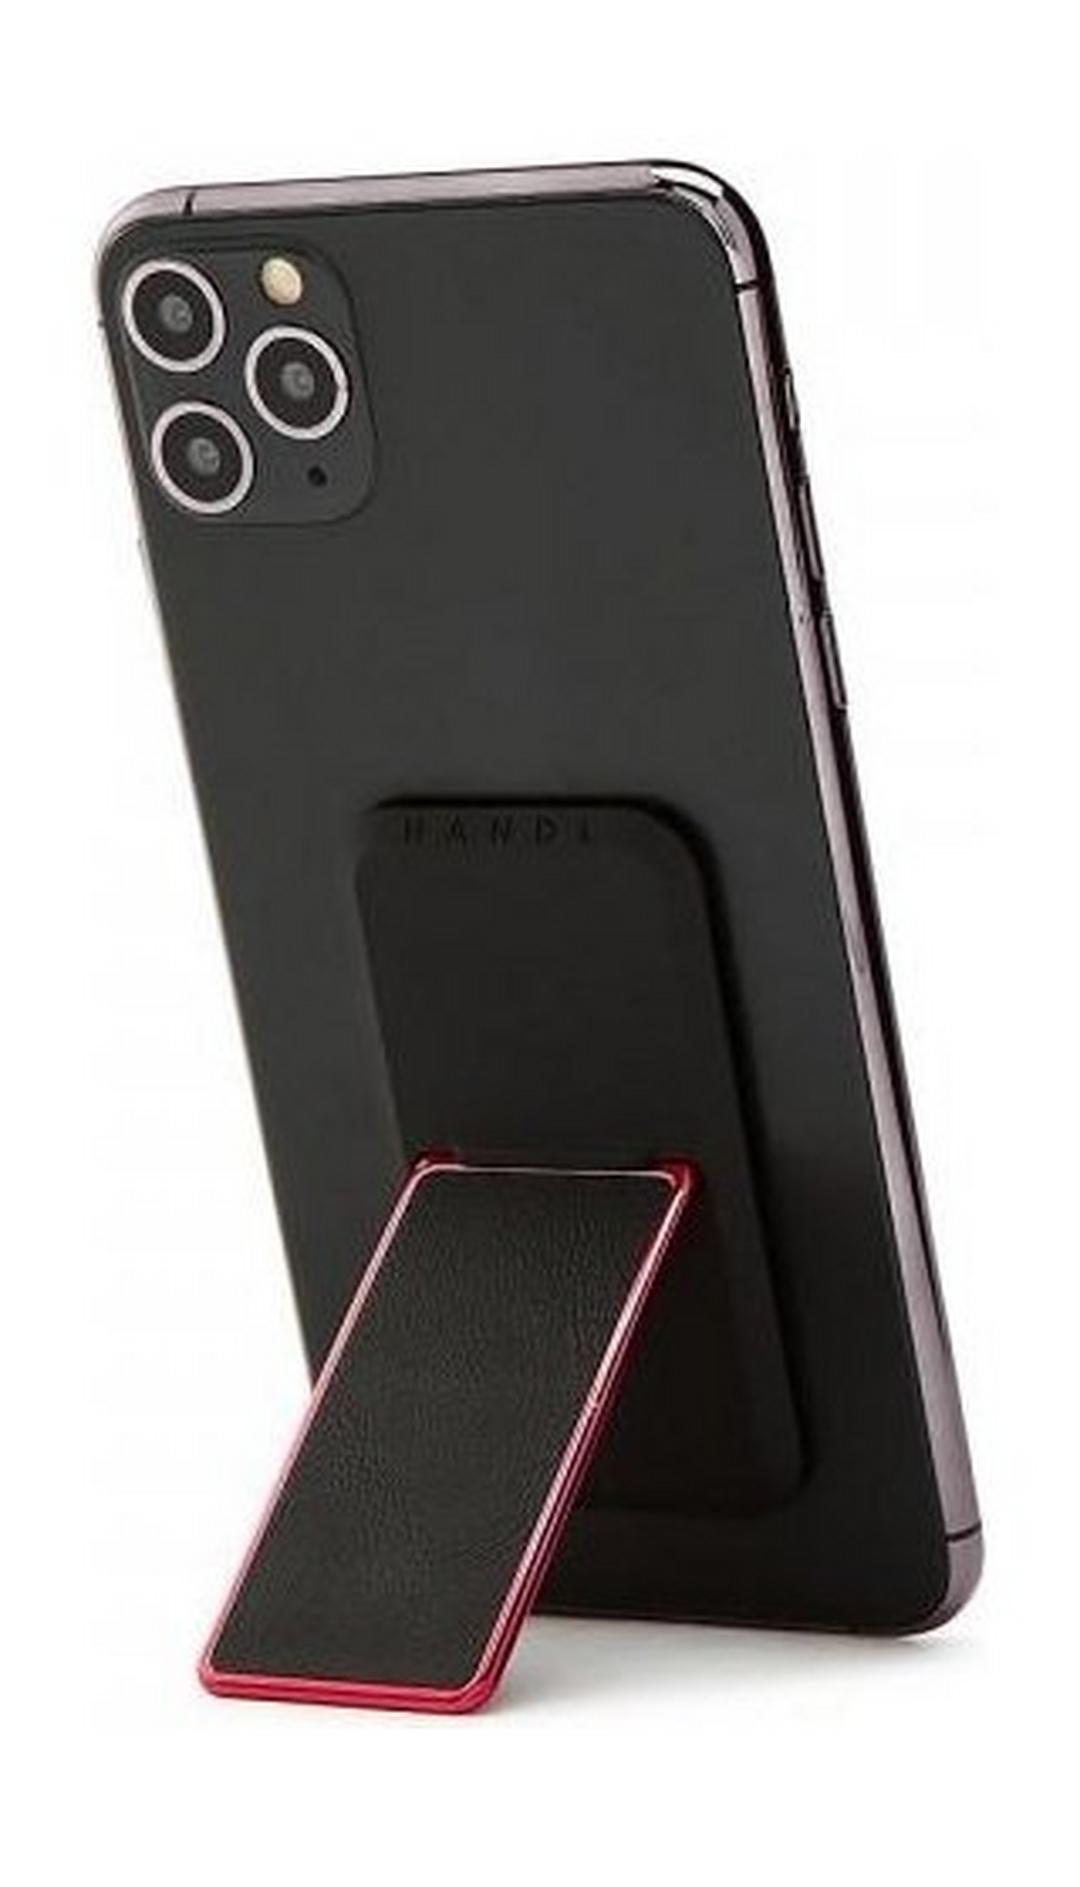 HANDLstick Smooth Leather Smartphone Holder- Black/Red